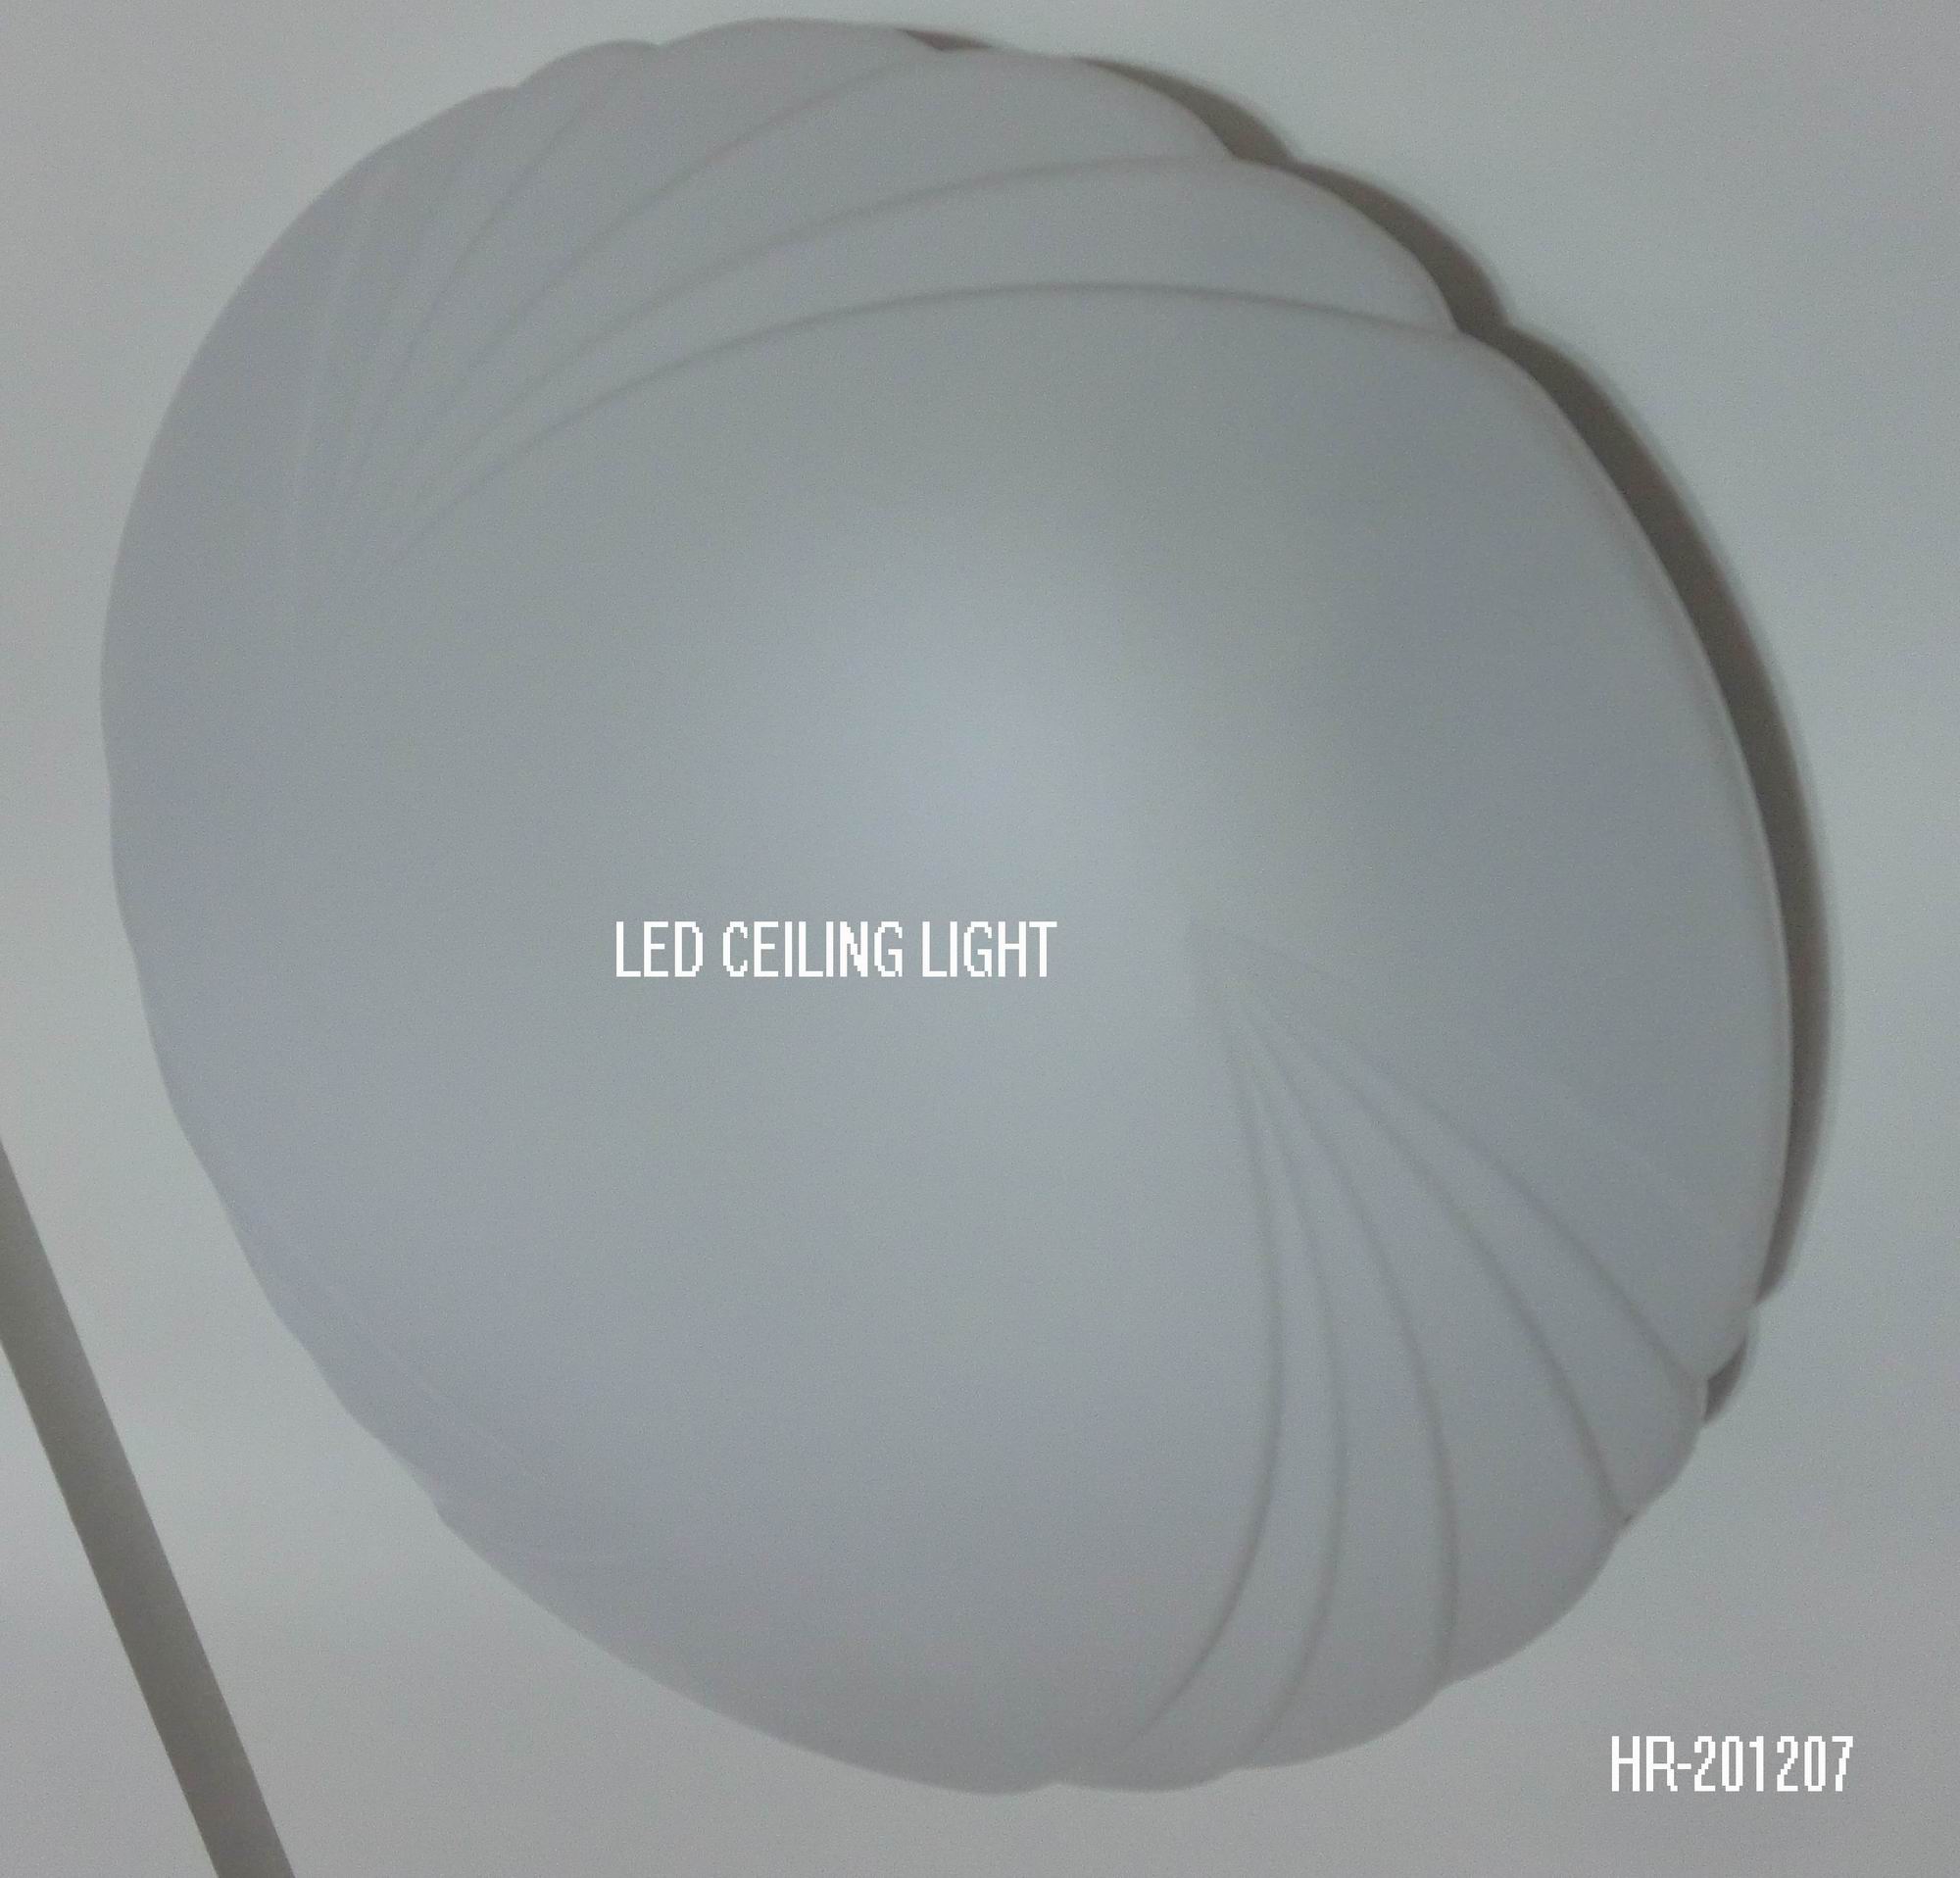 LED CEILING LIGHT HR-201207Spec:Unit: